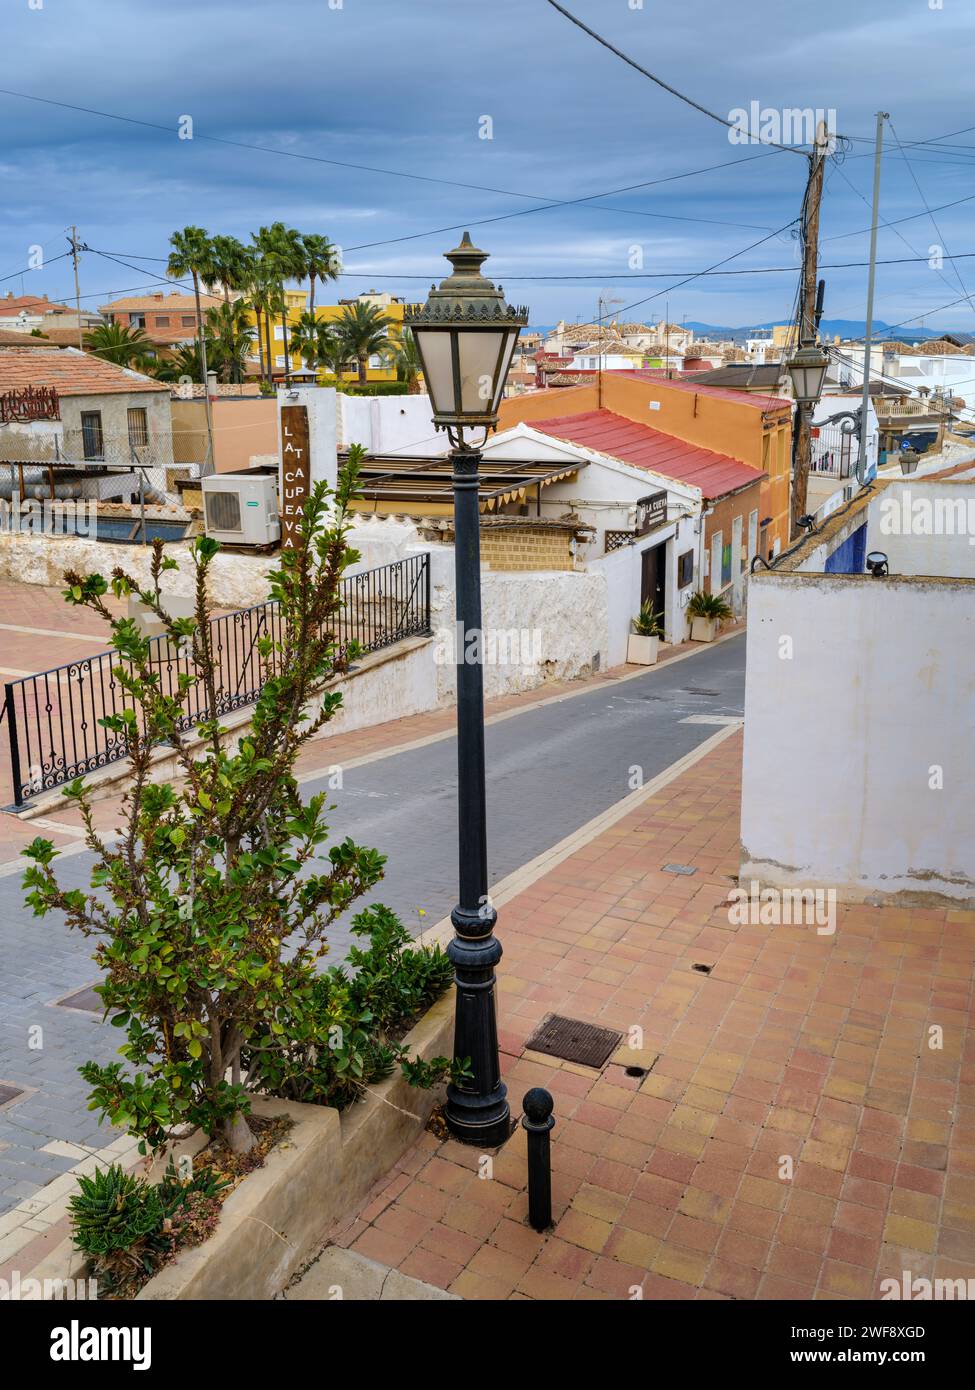 Calle la Cenia - San Miguel de Salinas, Alicante, Spanien. Eine der malerischen Straßen, gesäumt von einer Vielzahl von kleinen Häusern und Apartments in San mig Stockfoto